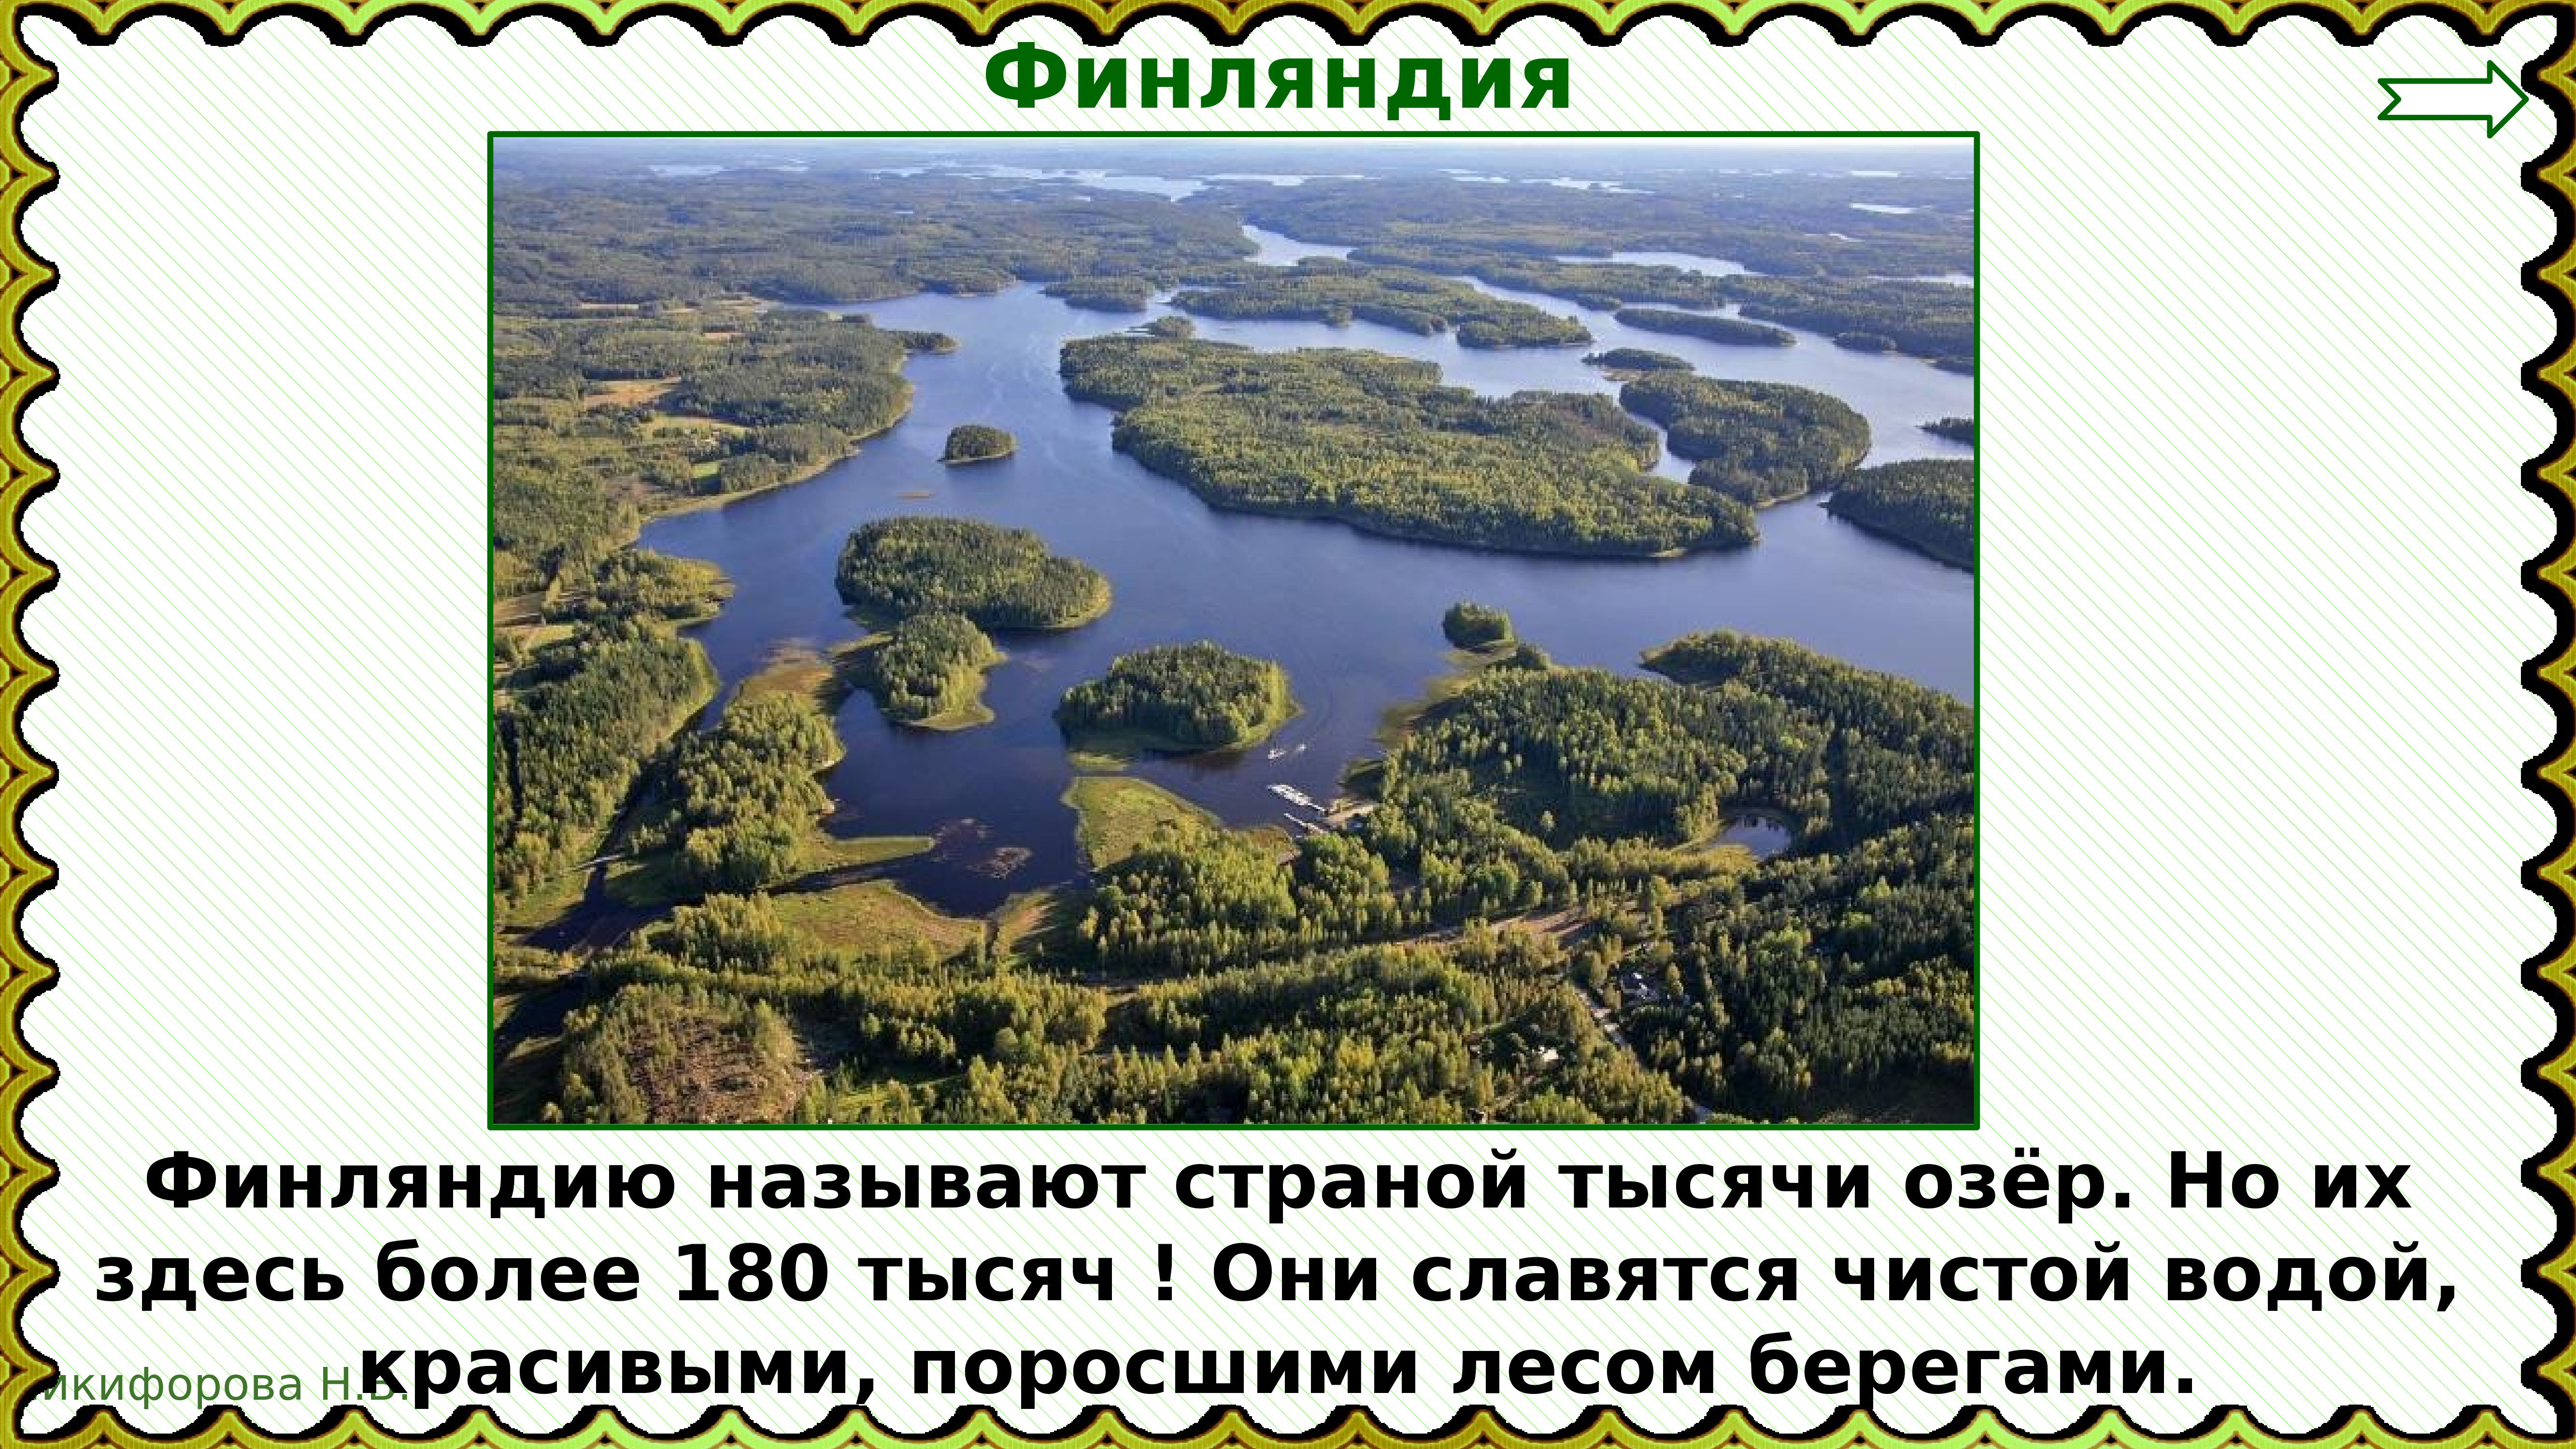 Республика тысячи озер. Страной тысячи озер называют. Назовите страну тысячи озер.. Финляндия 1000 озер. Финляндию называют страной 1000 озер.